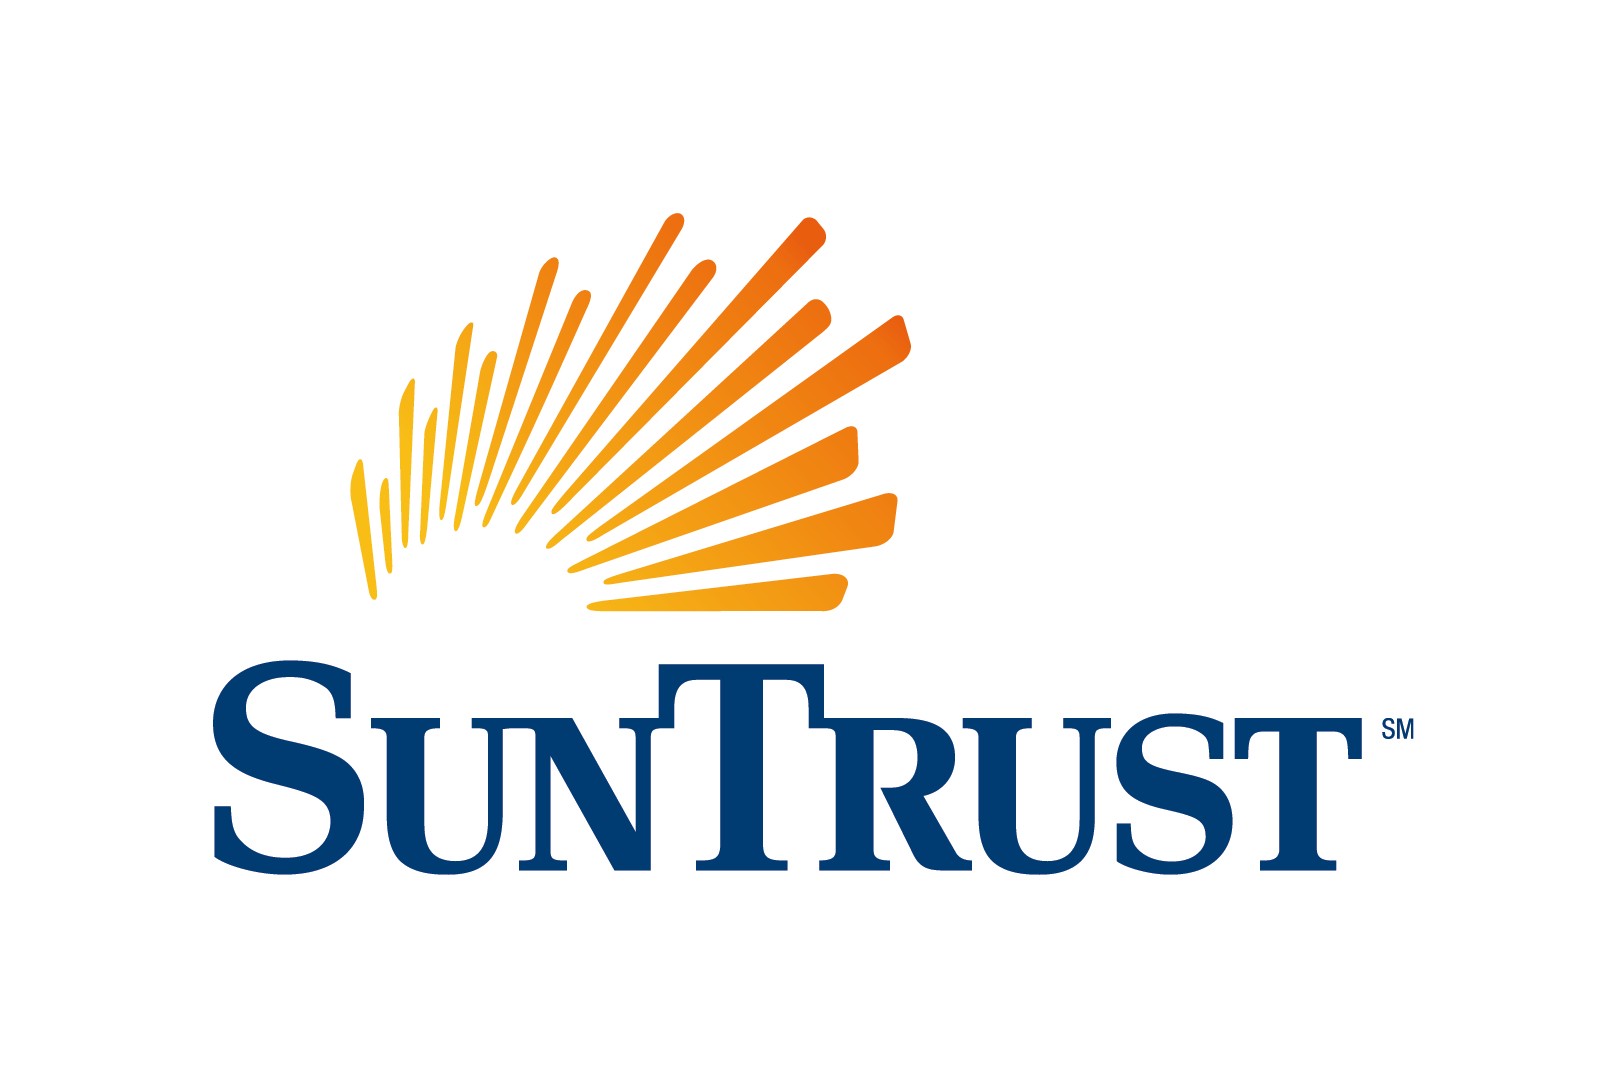 Sun Trust logos sun logo